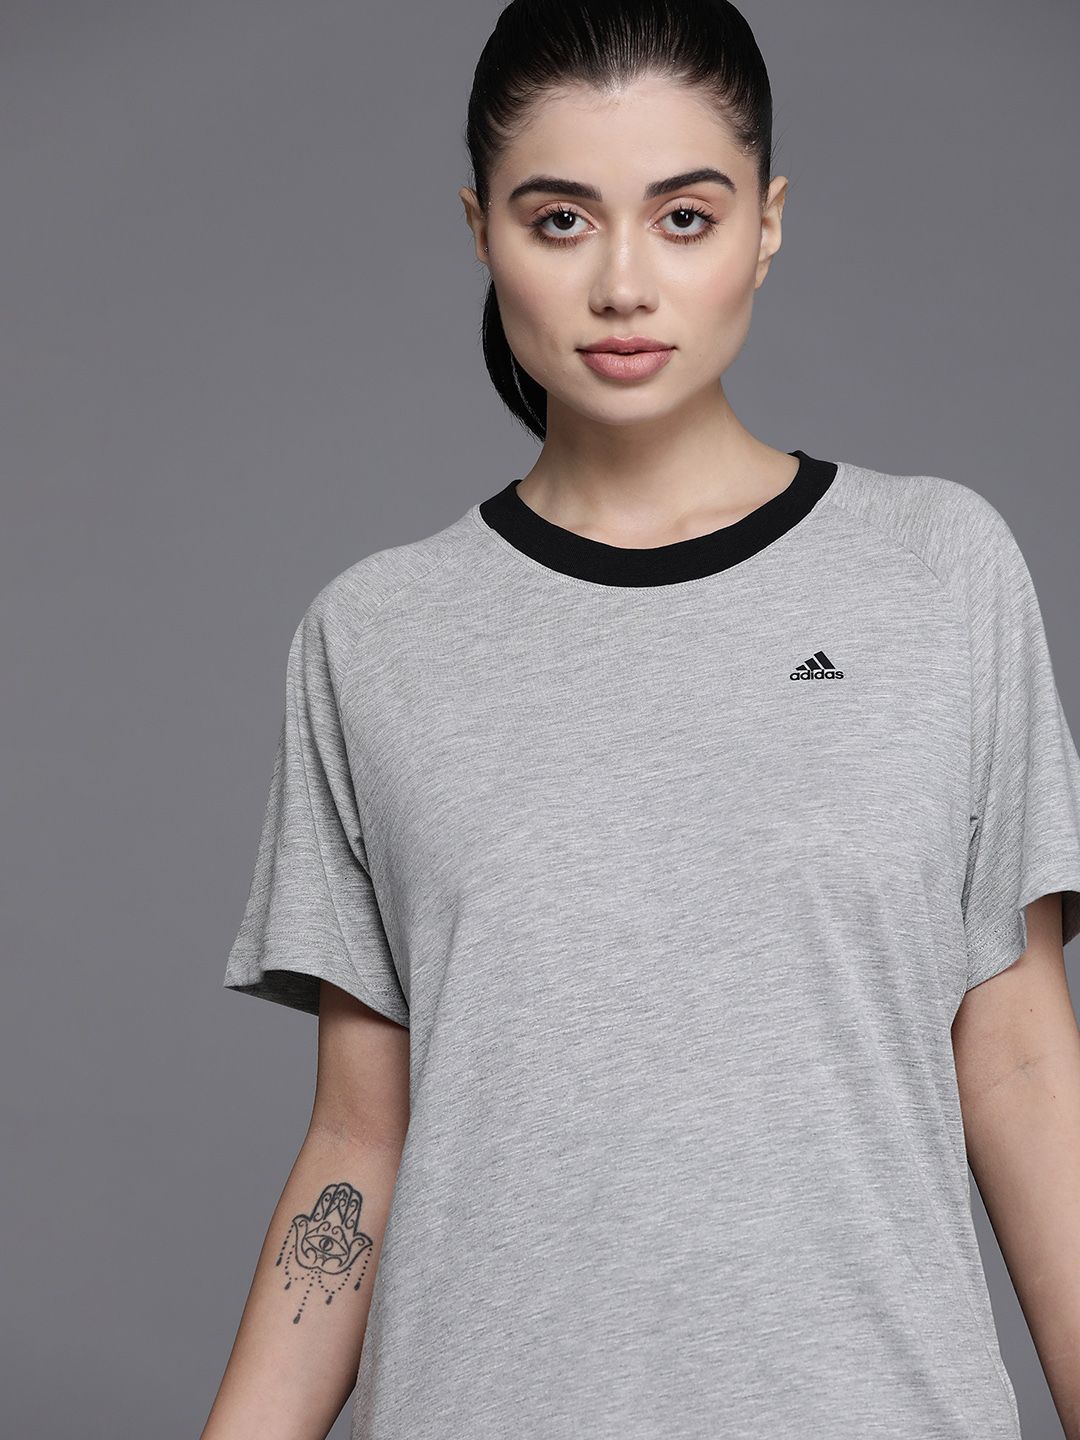 ADIDAS Women Grey Melange T-shirt Price in India